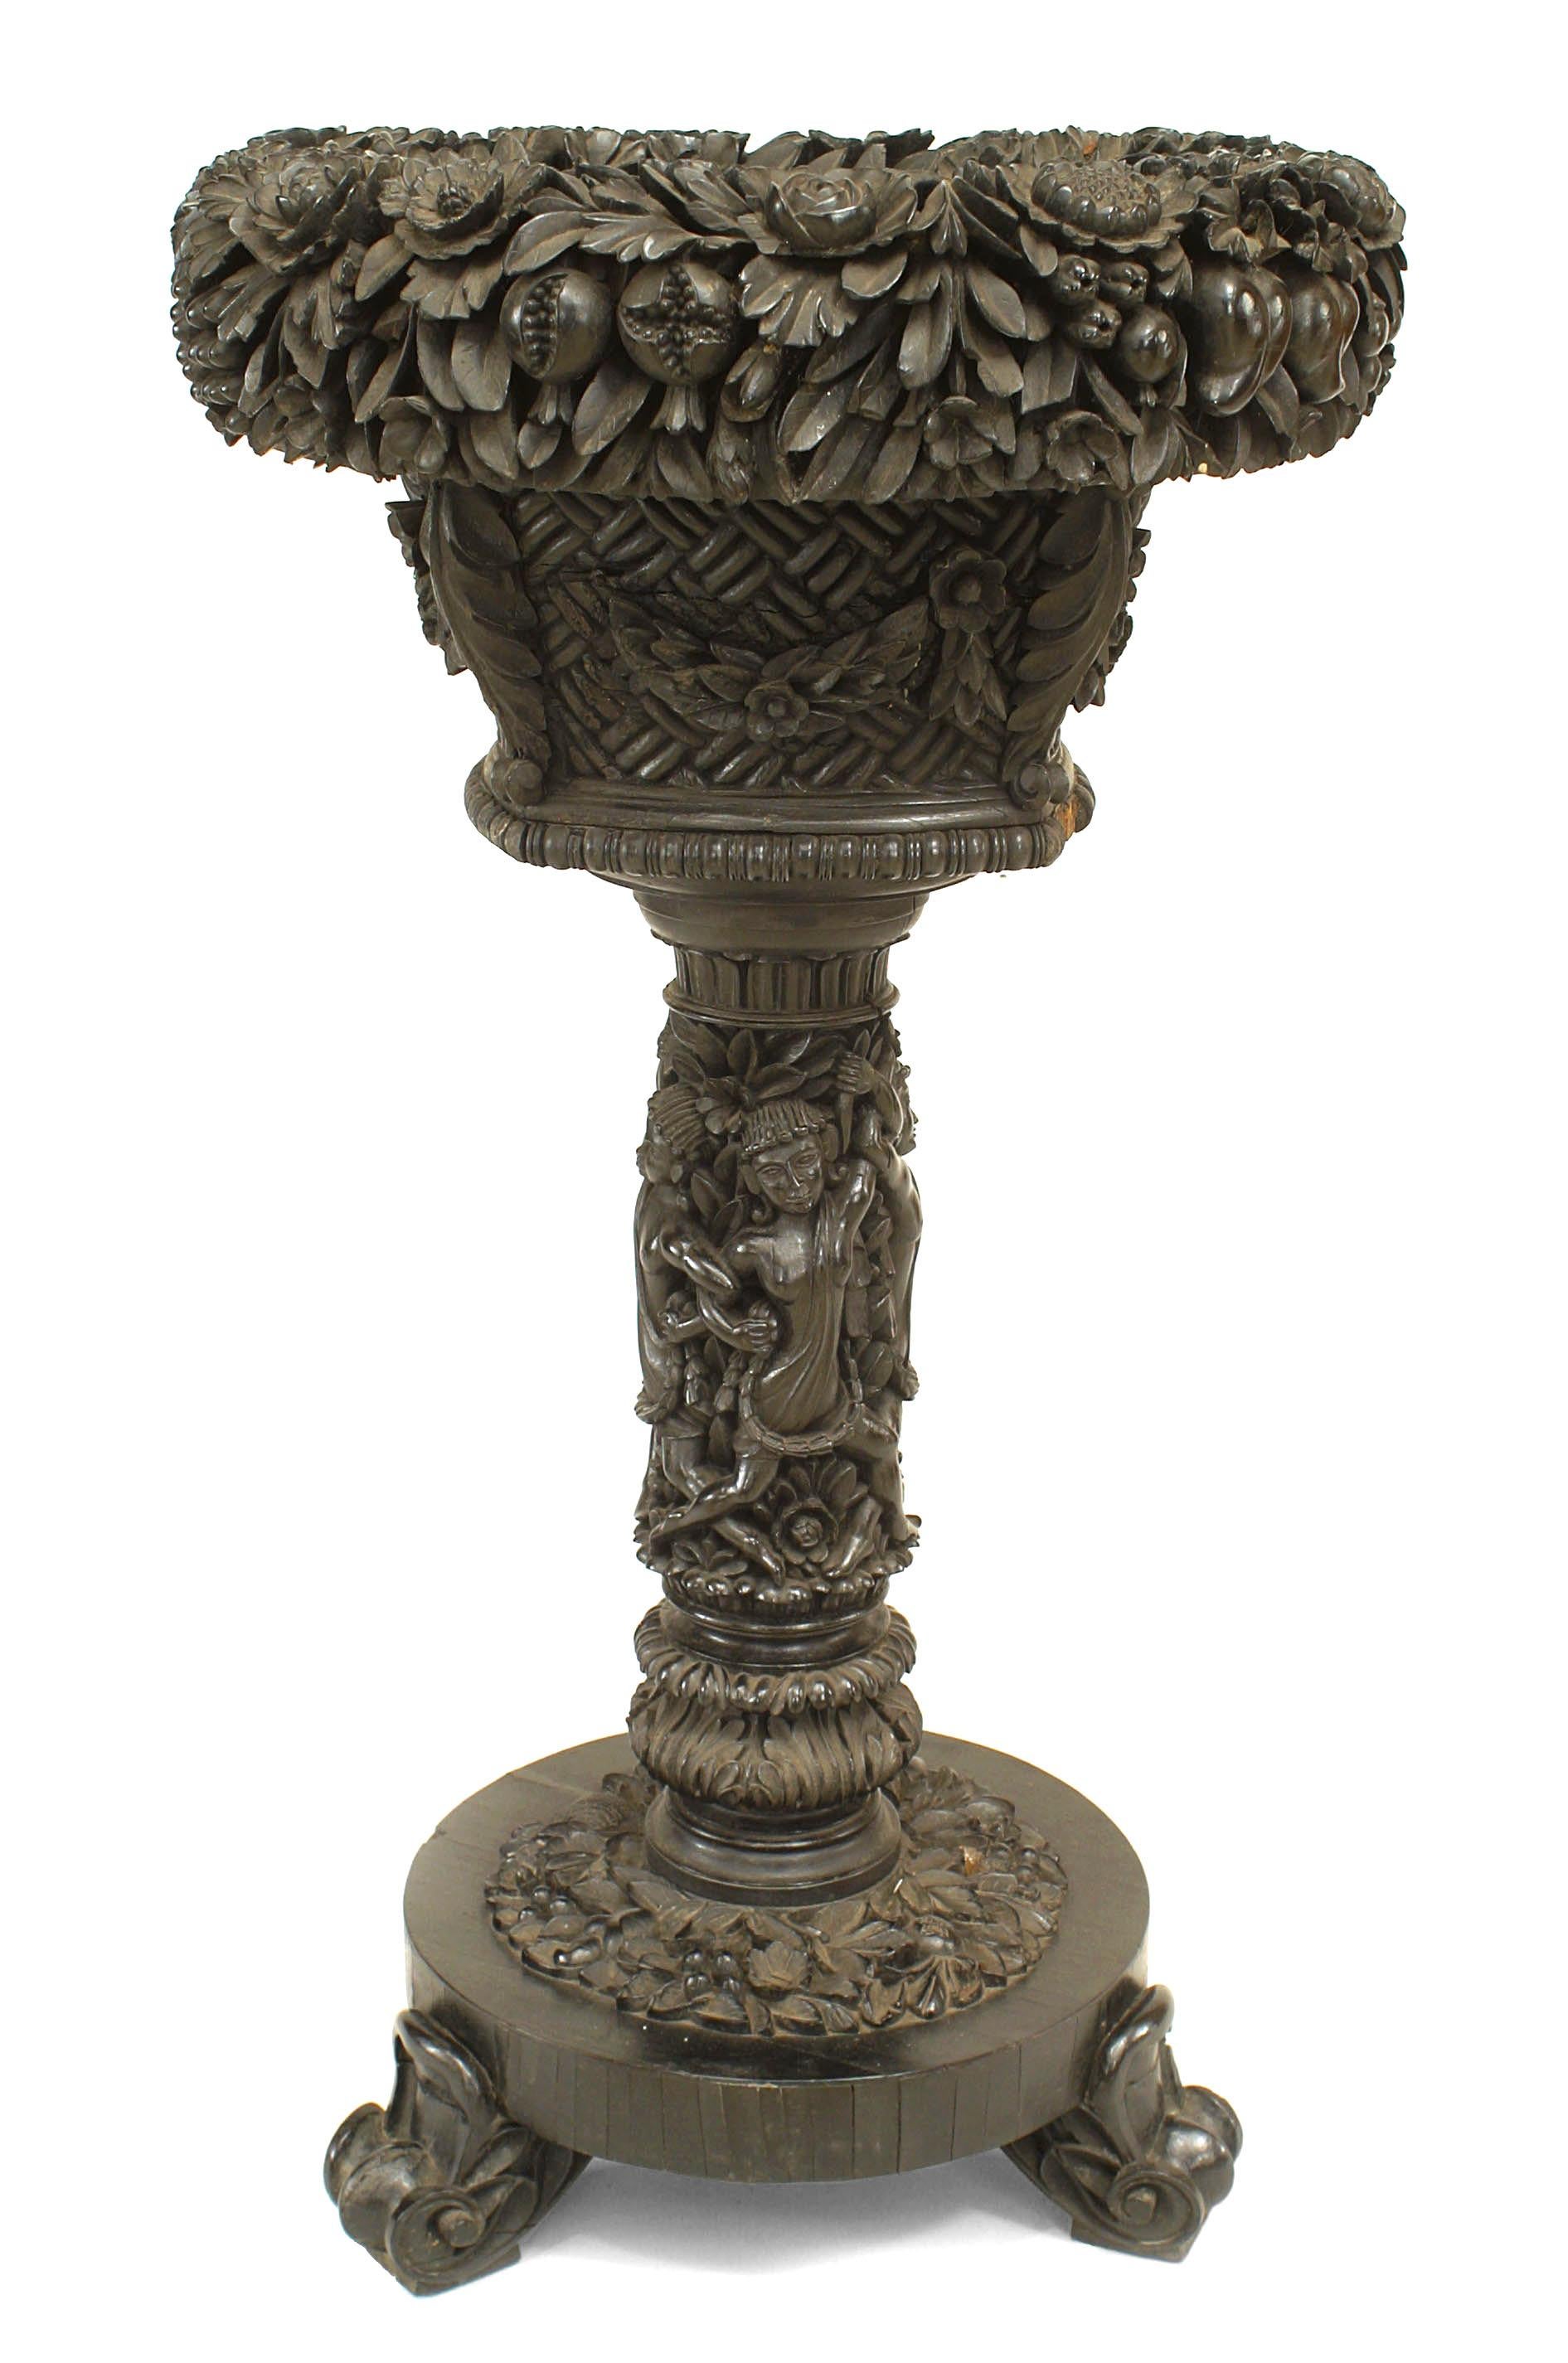 Fougère anglaise anglo-indienne en ébène sculptée de motifs floraux, avec plateau circulaire et base sur piédestal. (19ème siècle)
